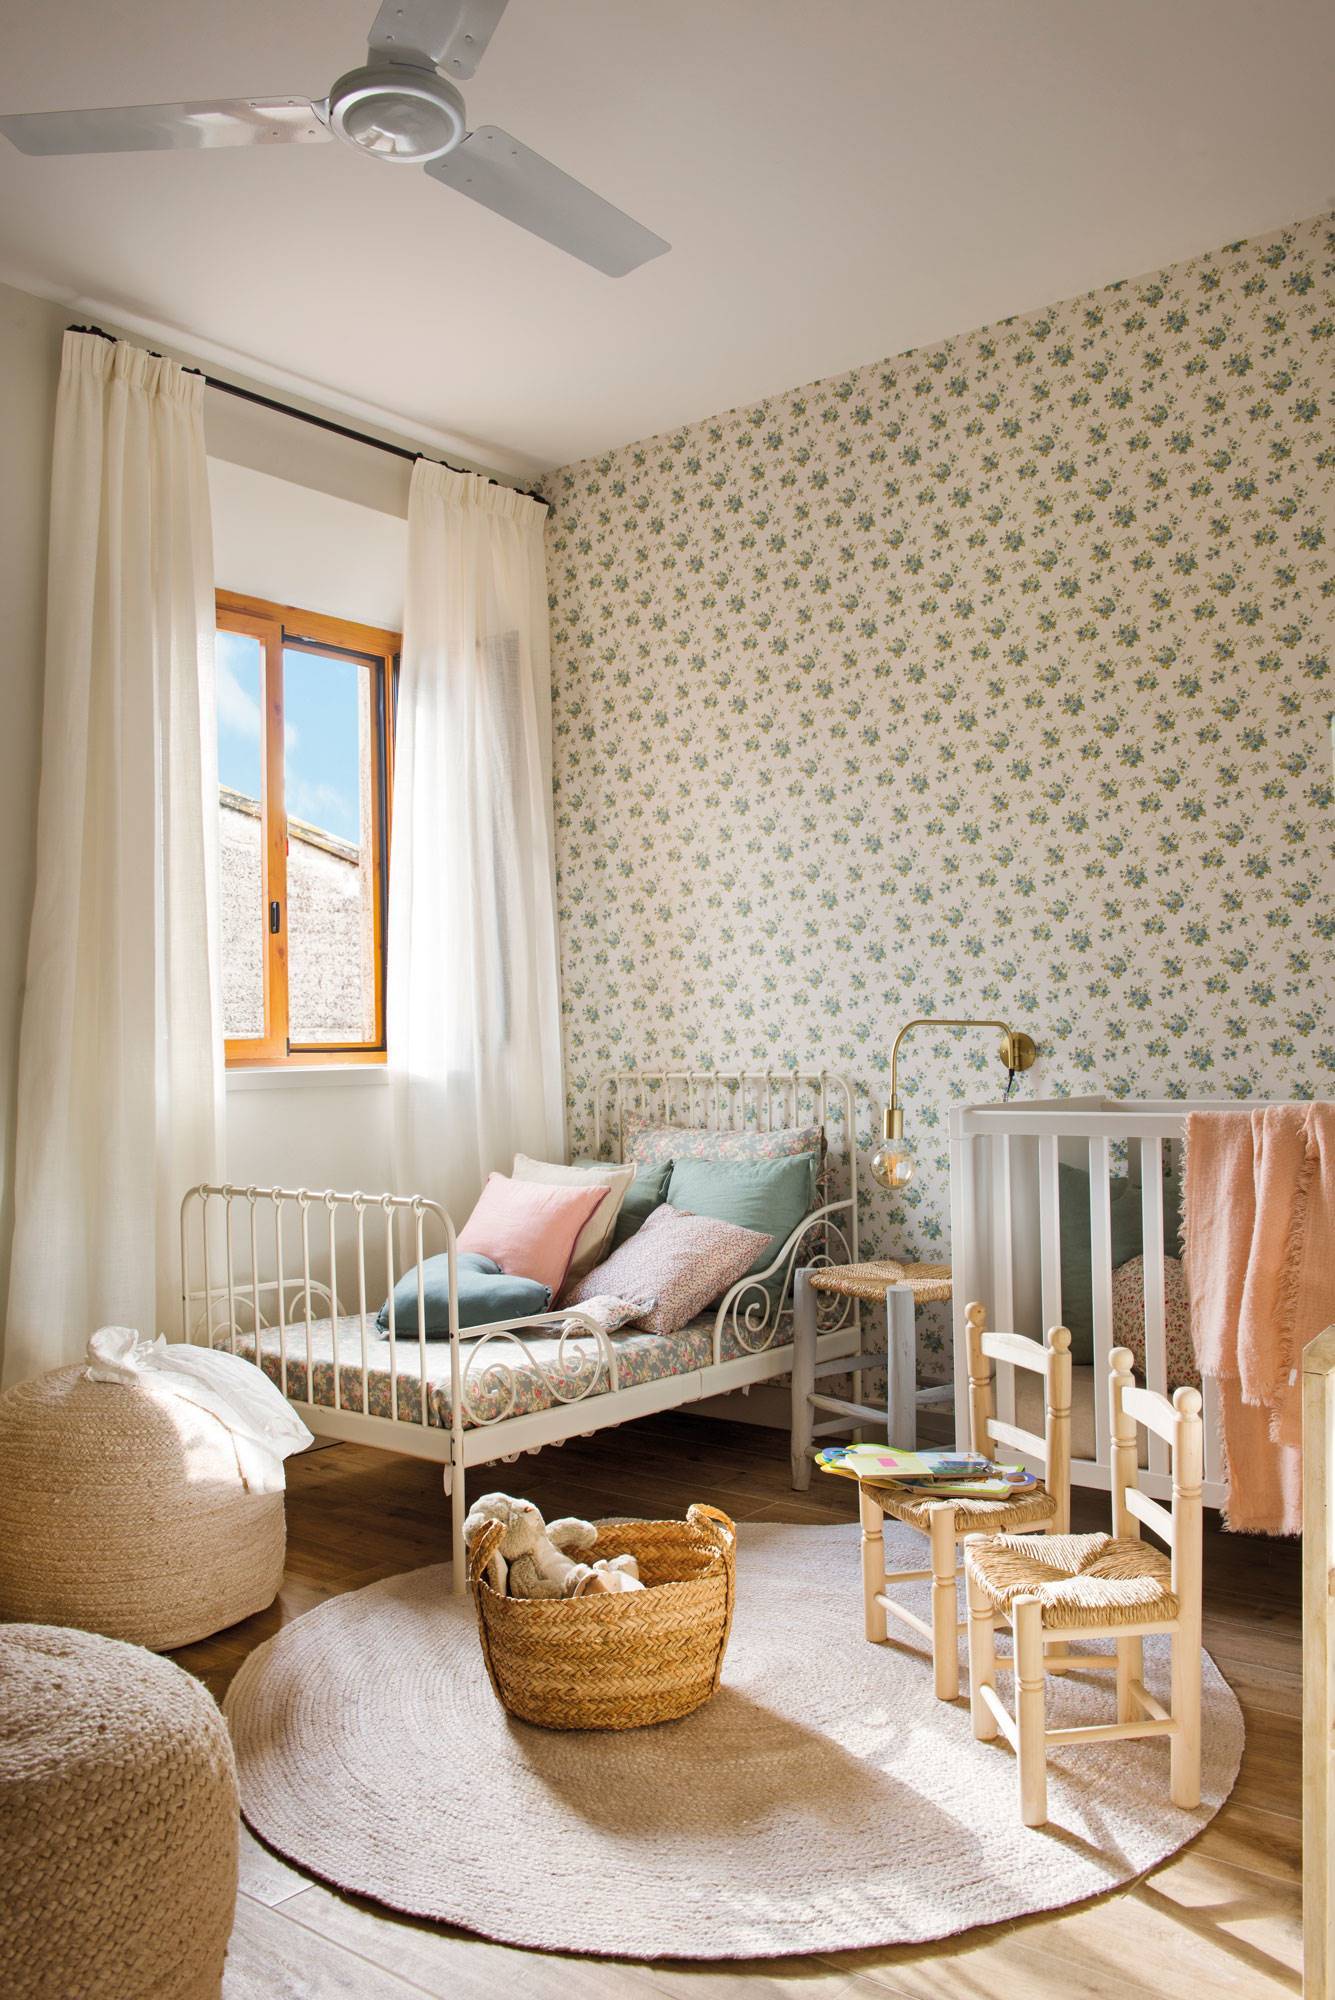 Habitacio´n infantil cama y cuna y papel pintado. Pufs, sillas y alfombra de fibra vegetal. 